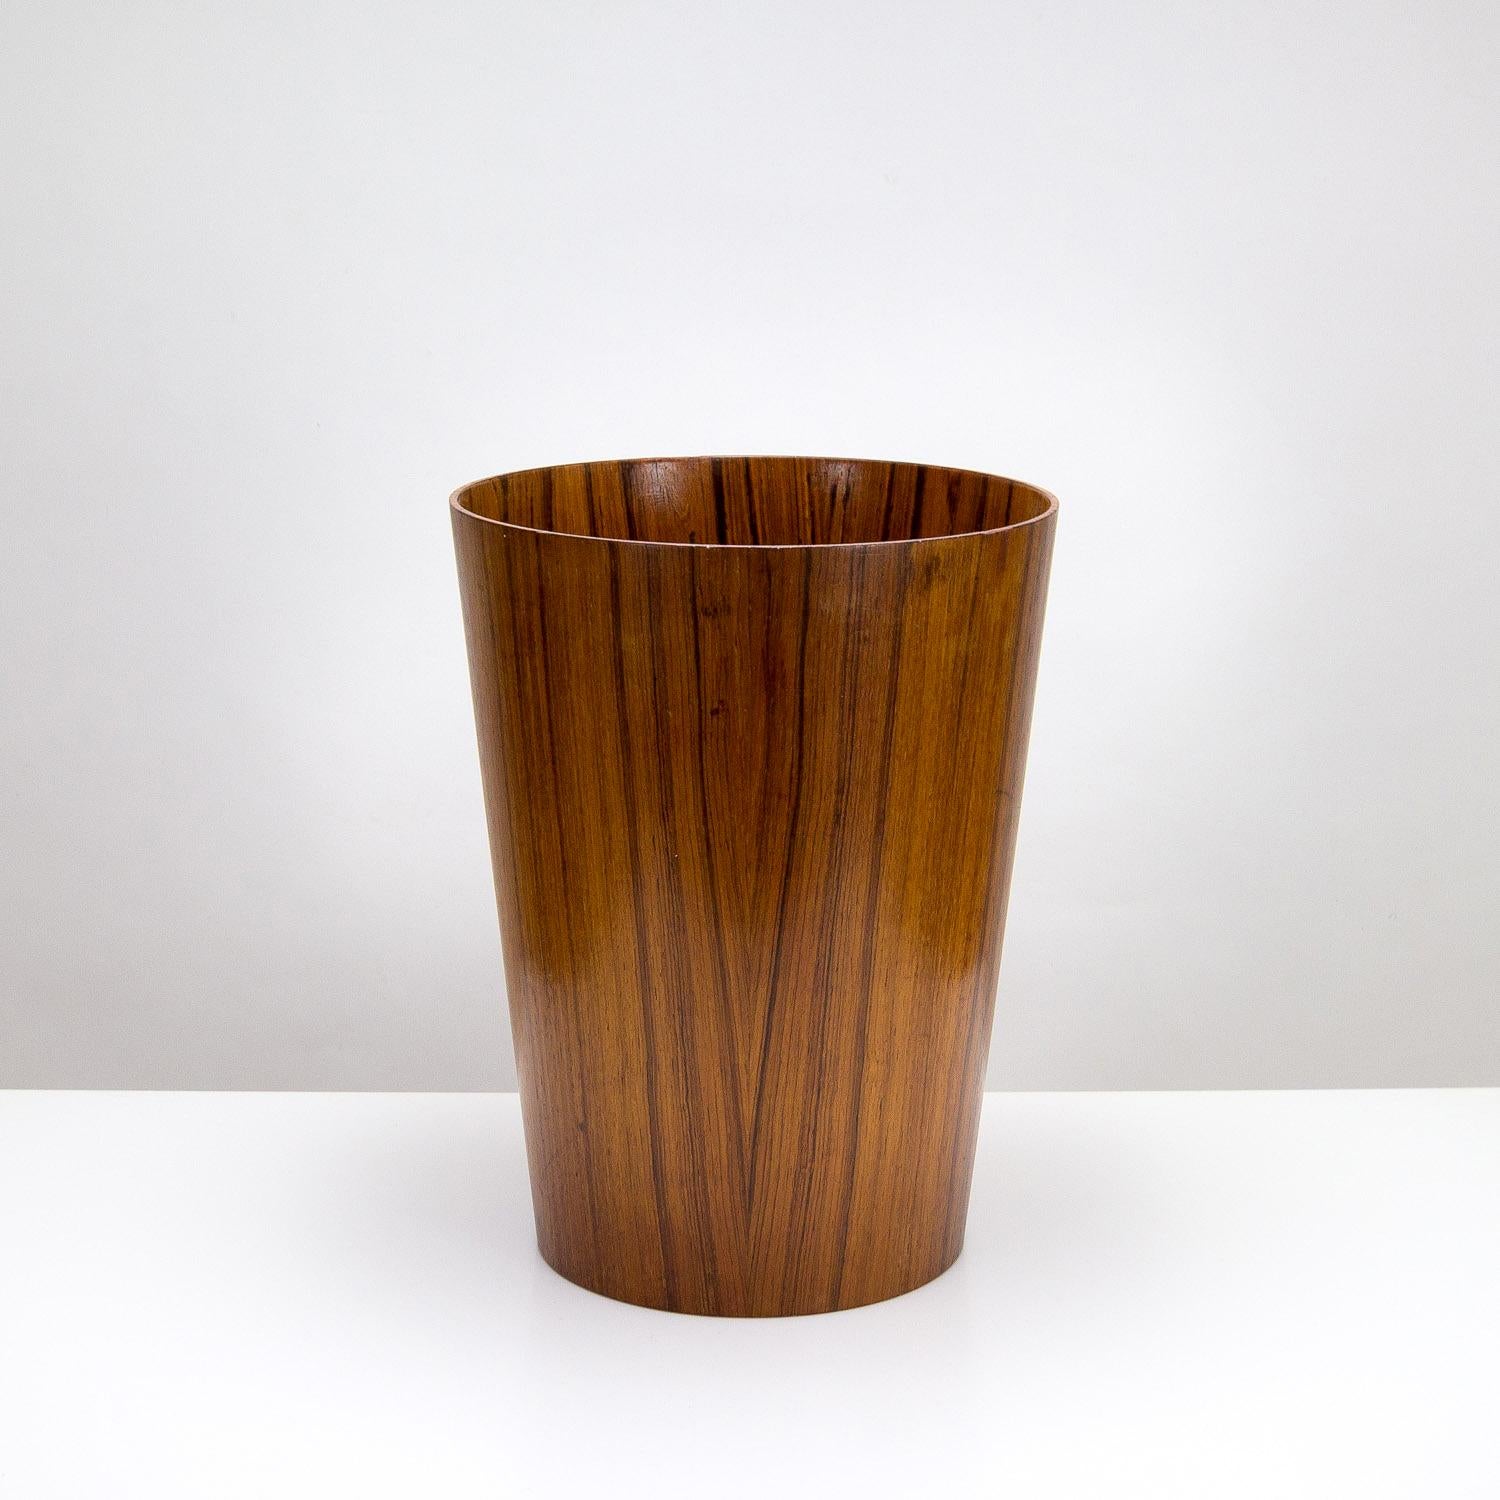 Mid-Century Modern Rosewood Waste Paper Basket by Martin Åberg for Servex, Sweden 1960s